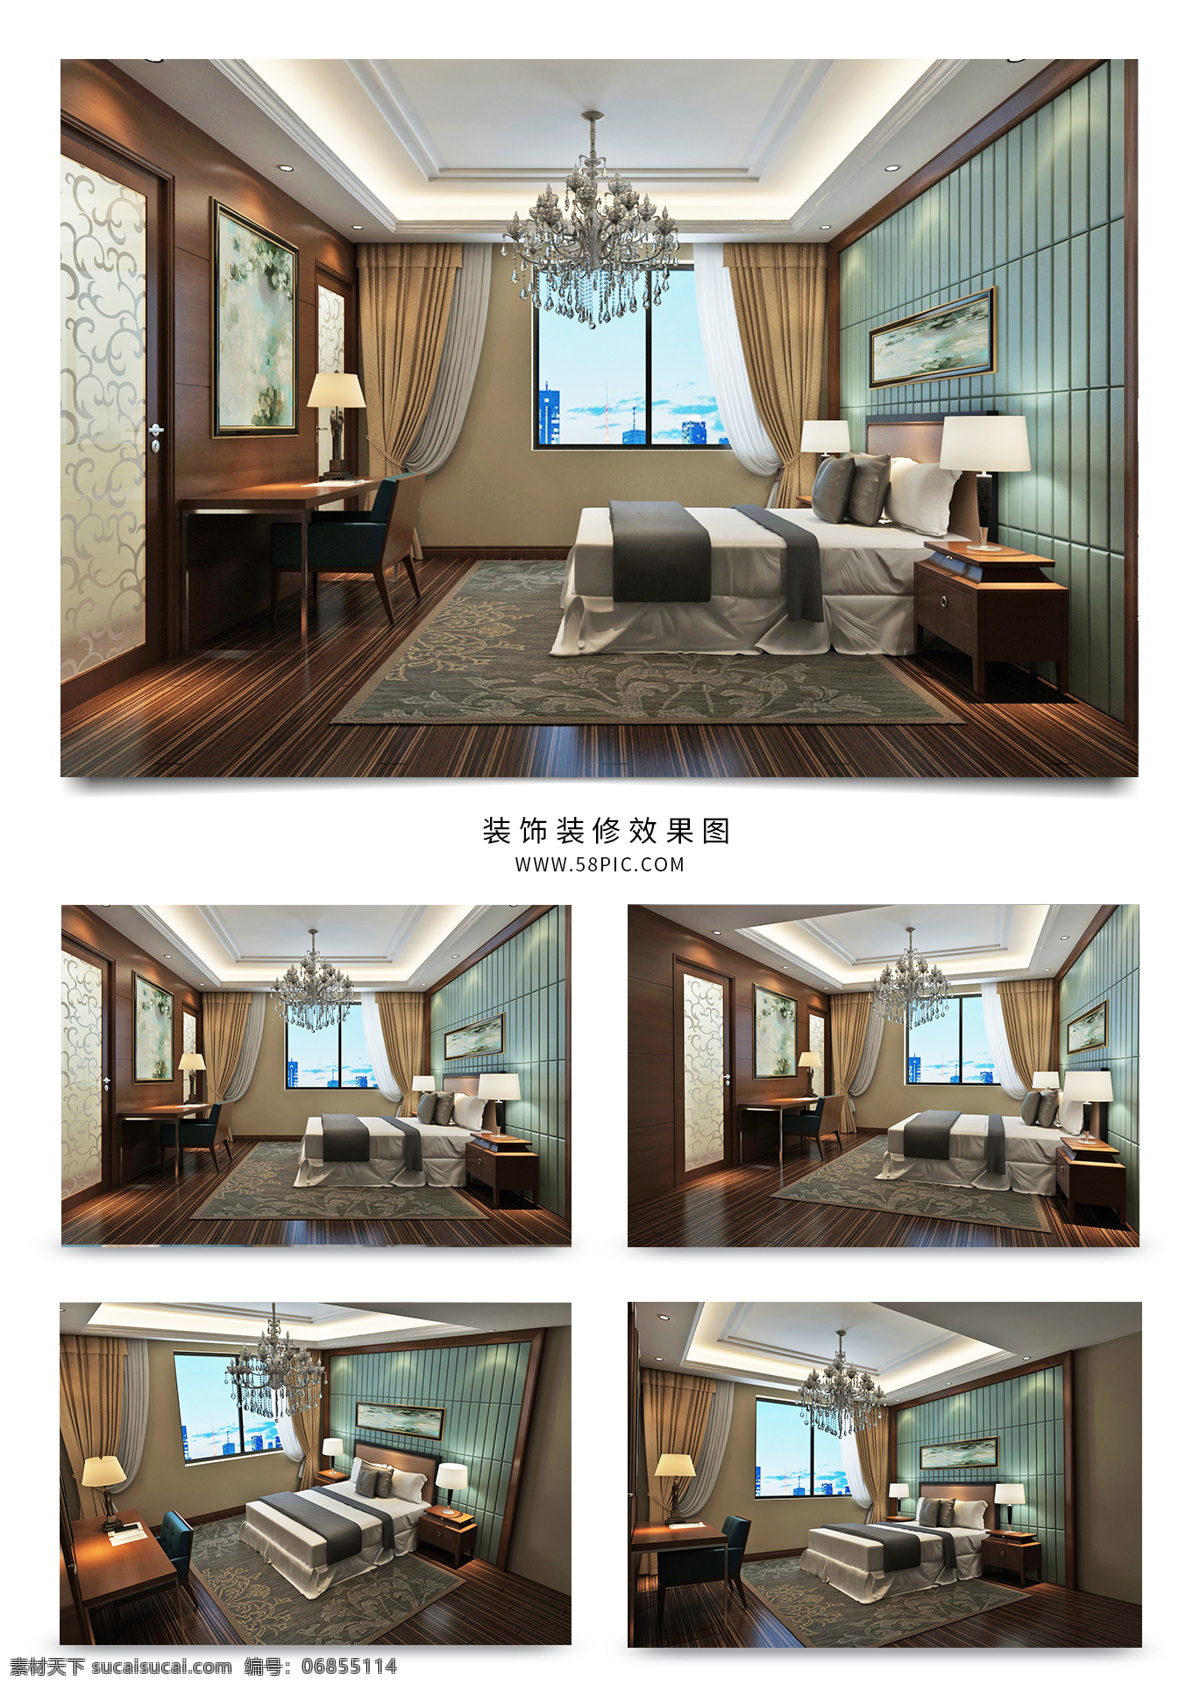 新 中式 风格 酒店 客房 大 床 房 效果图 模型 3dmax 吊灯 新中式 大气 大床房 包房 包间